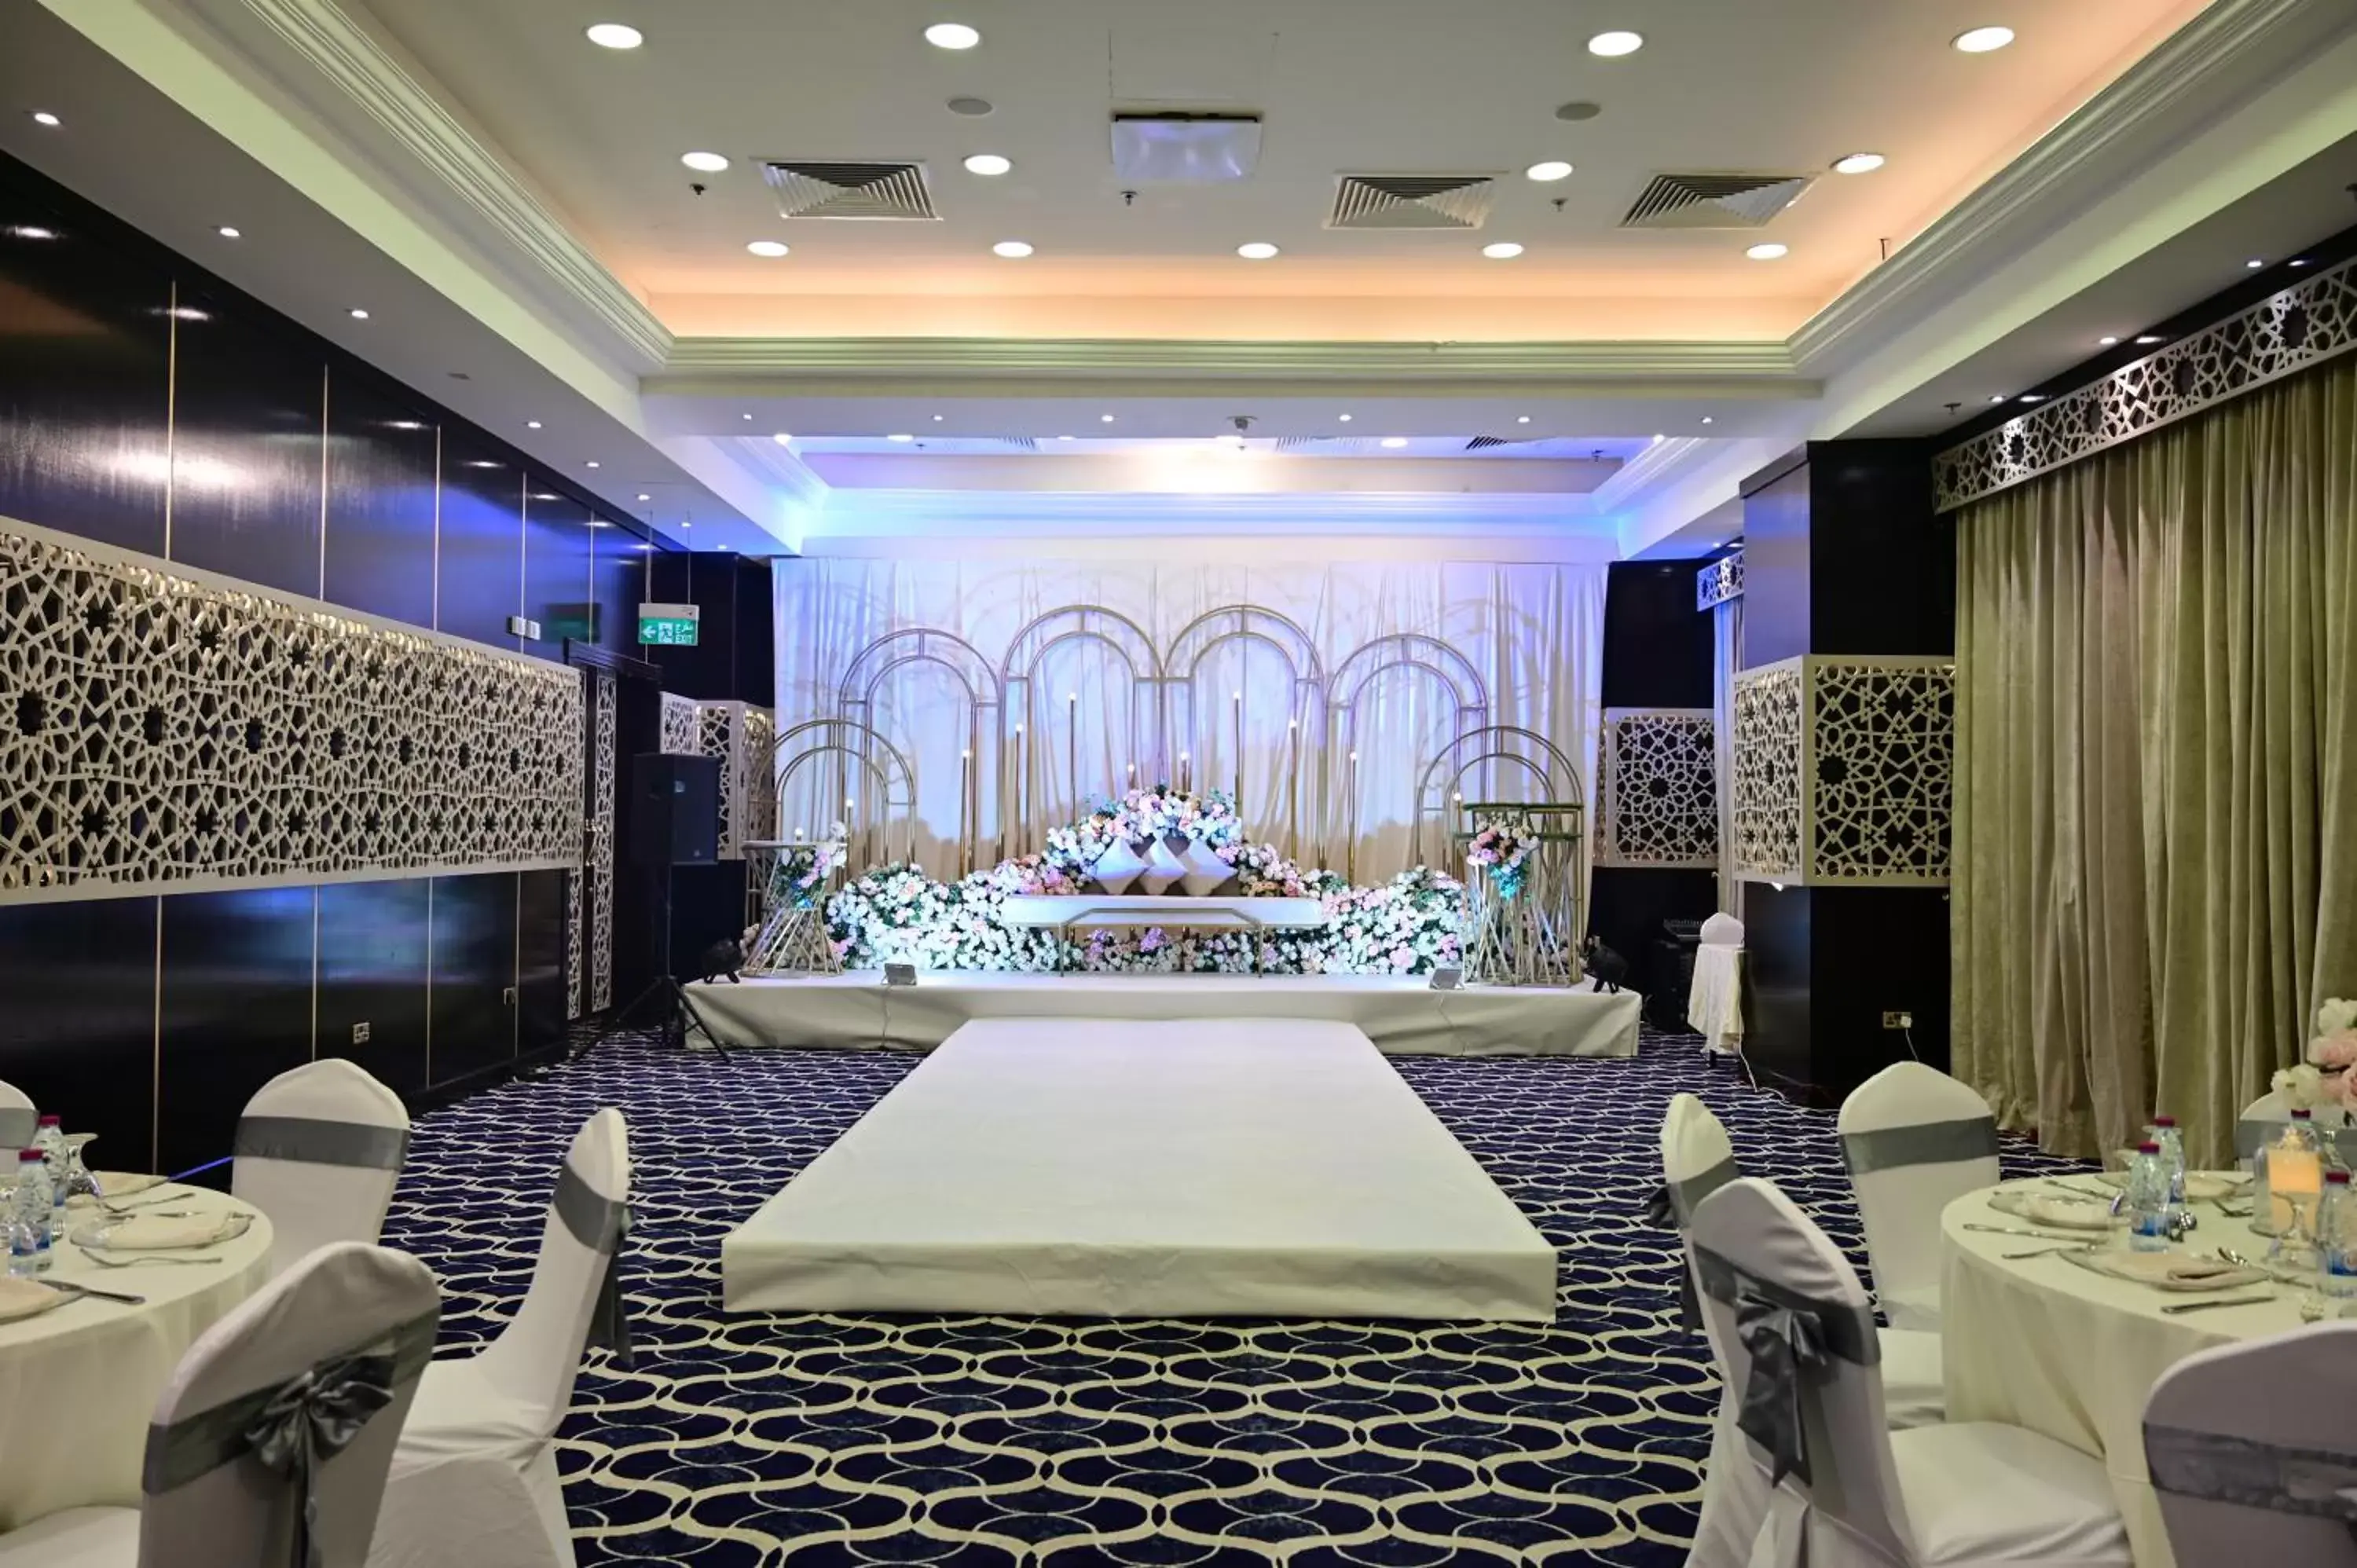 Banquet/Function facilities, Restaurant/Places to Eat in Retaj Al Rayyan